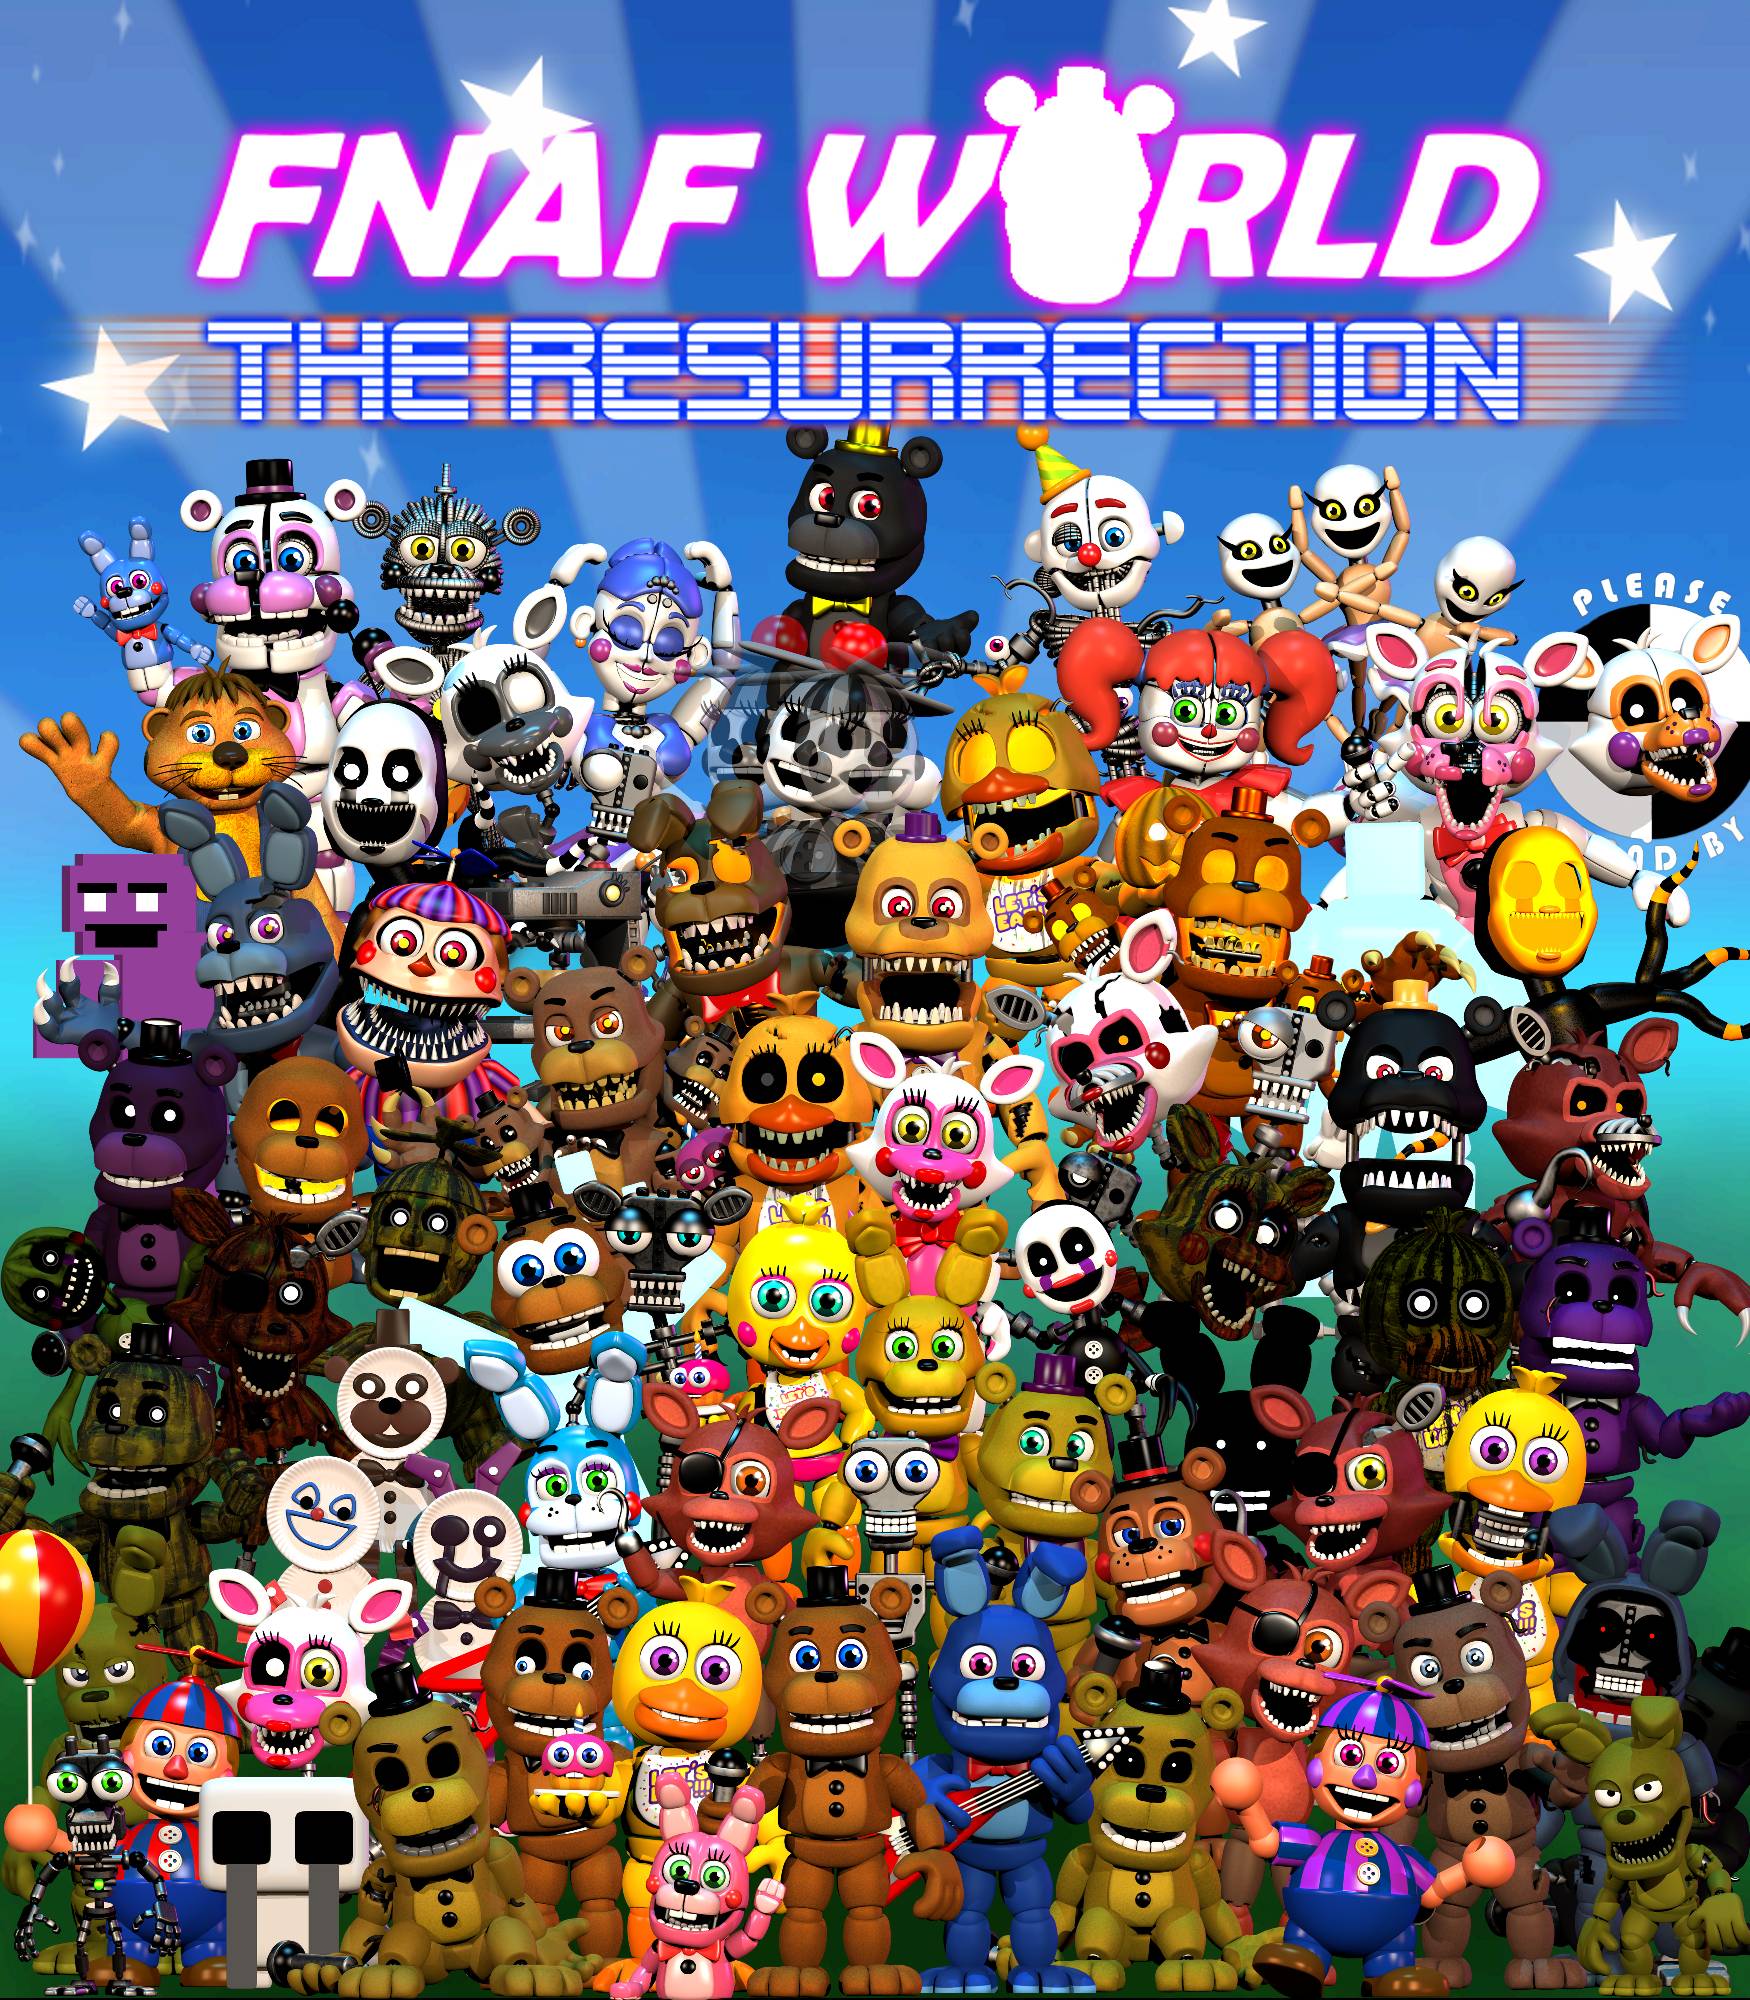 FNAF World: The Resurrection (Official) Free Download - FNaF Fan Games